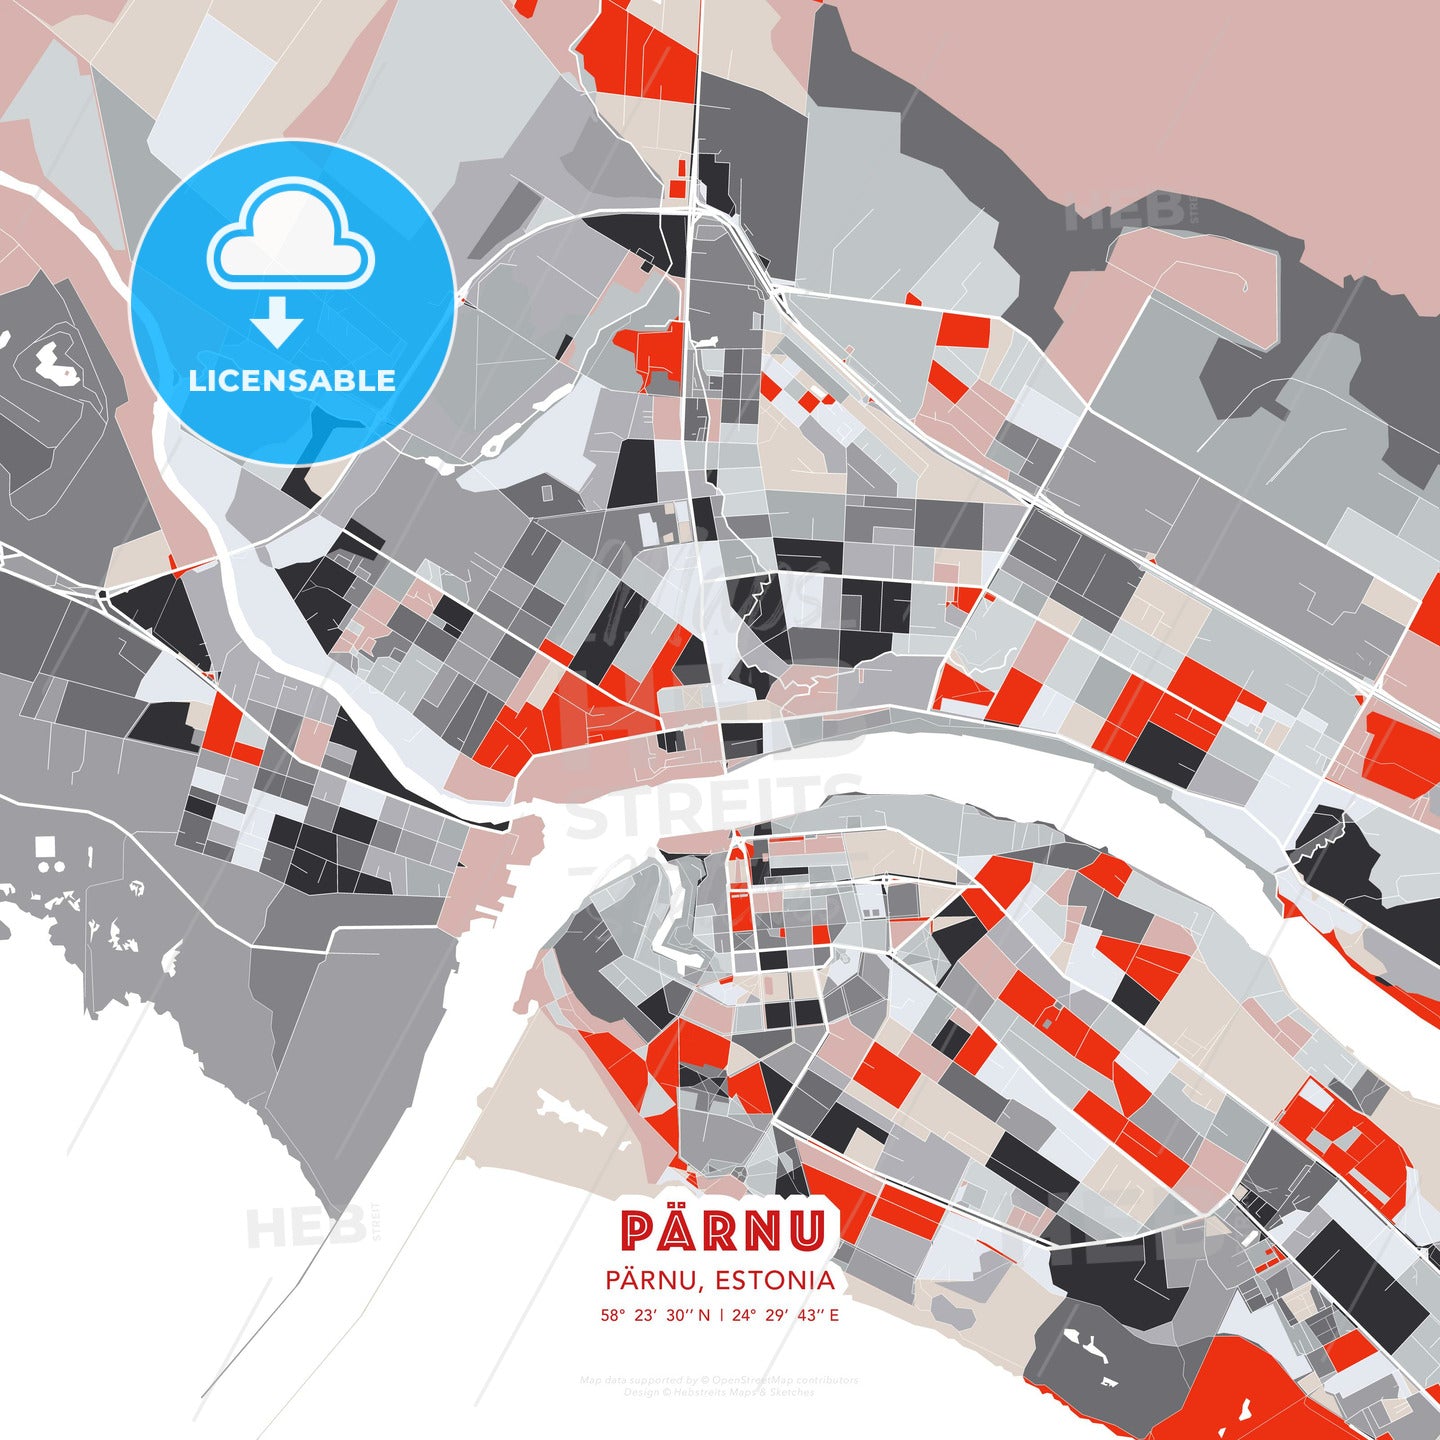 Pärnu, Pärnu, Estonia, modern map - HEBSTREITS Sketches